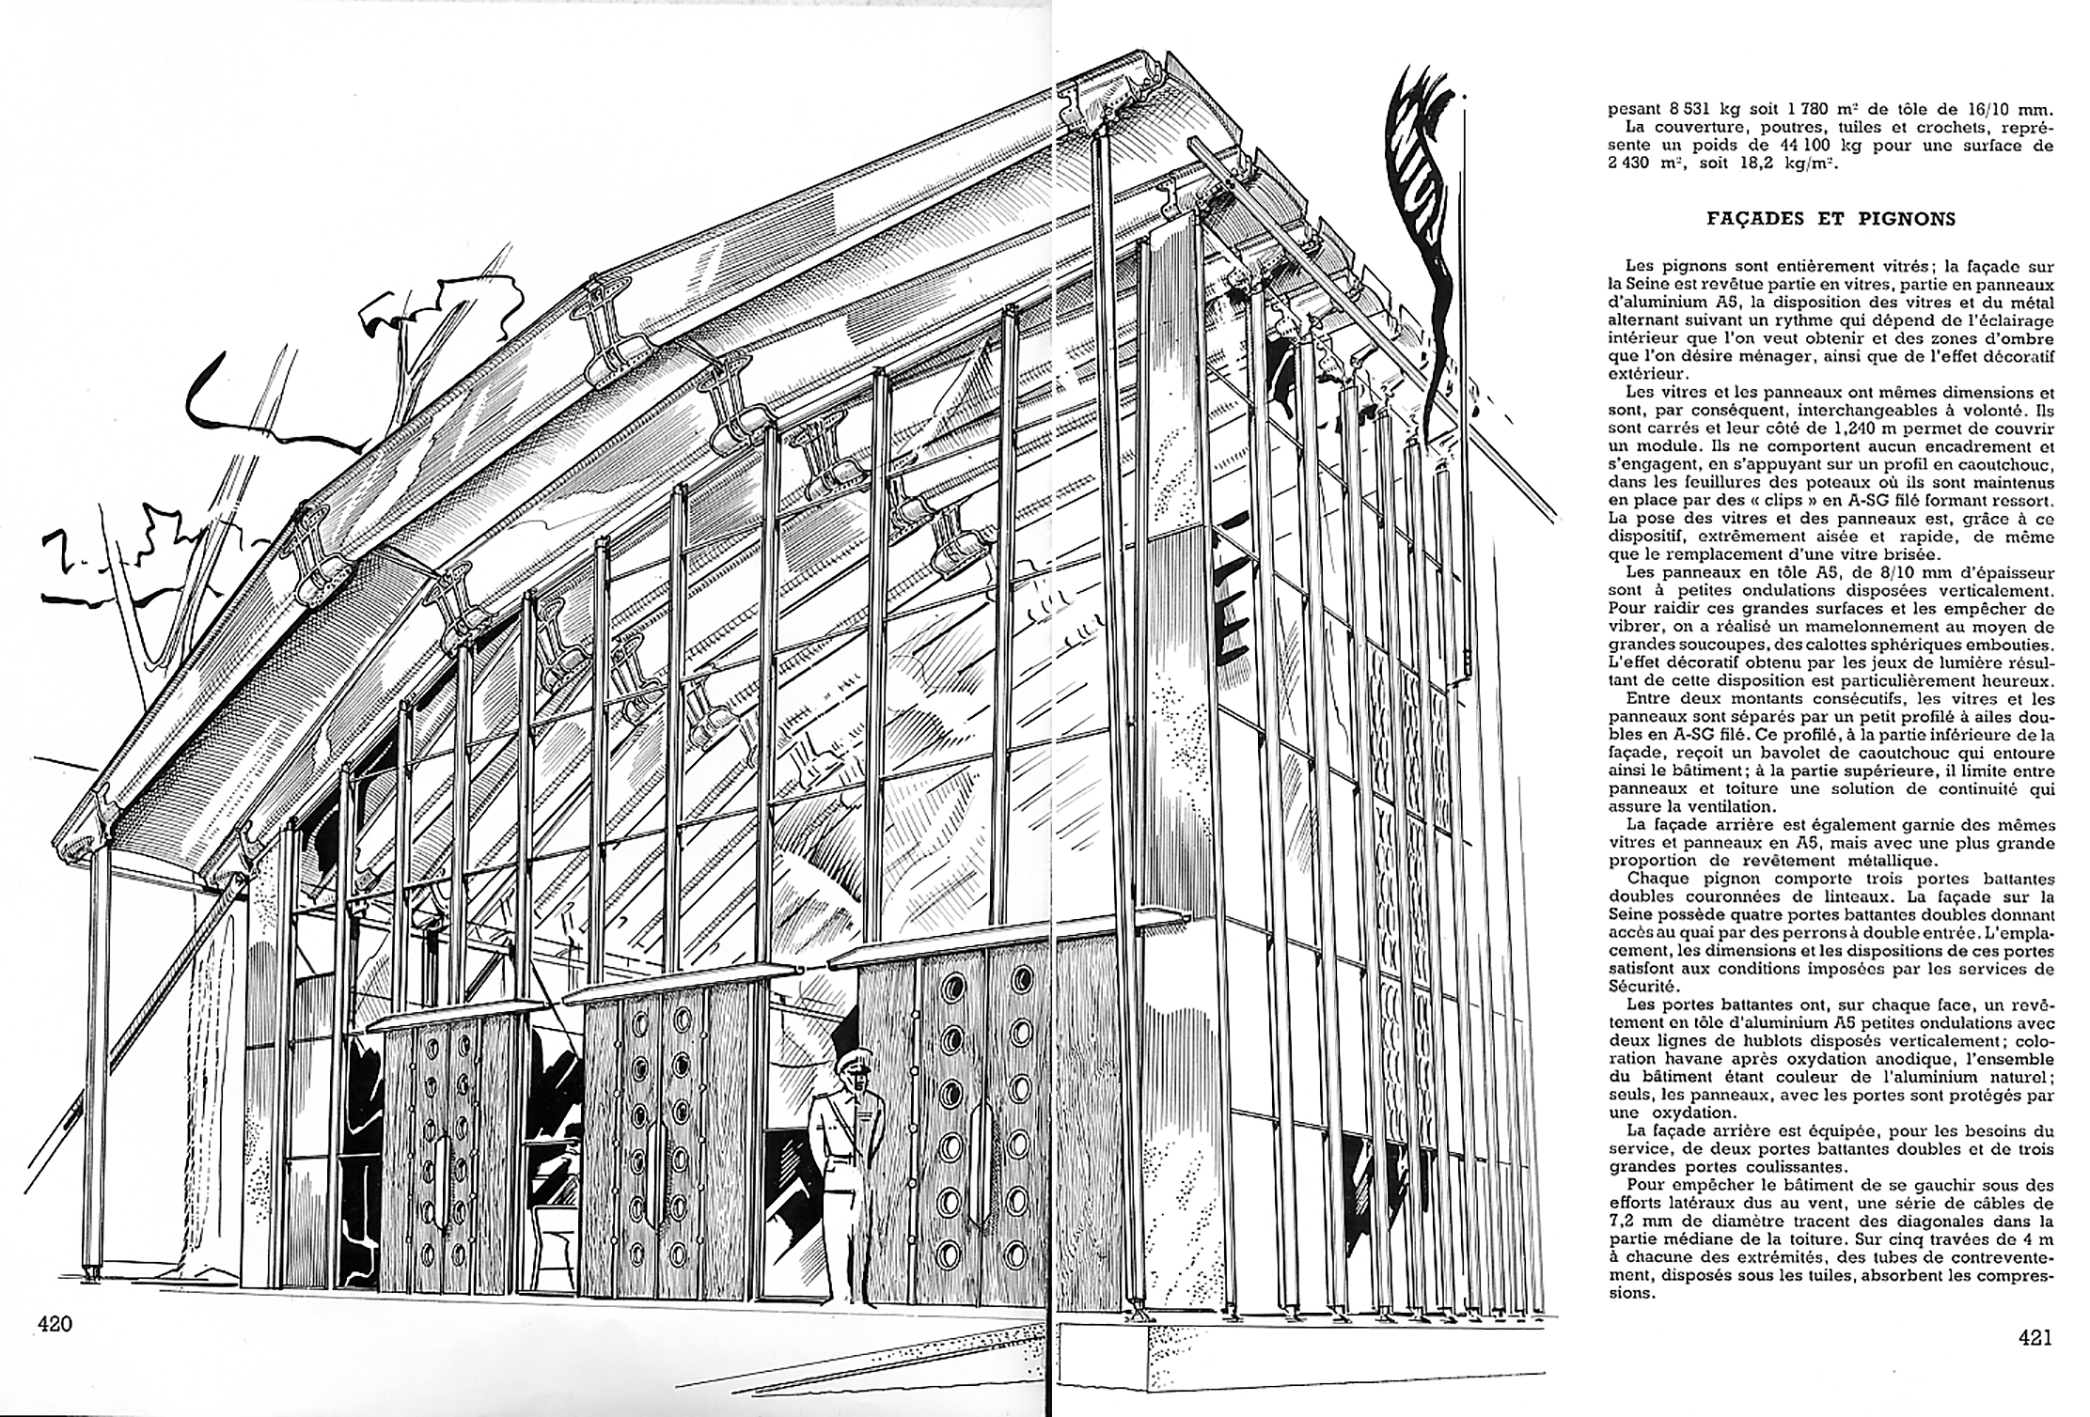 “The Aluminium Centenary Exhibition Building”. <i>Revue de l’aluminium,</i> no. 216, 1954.